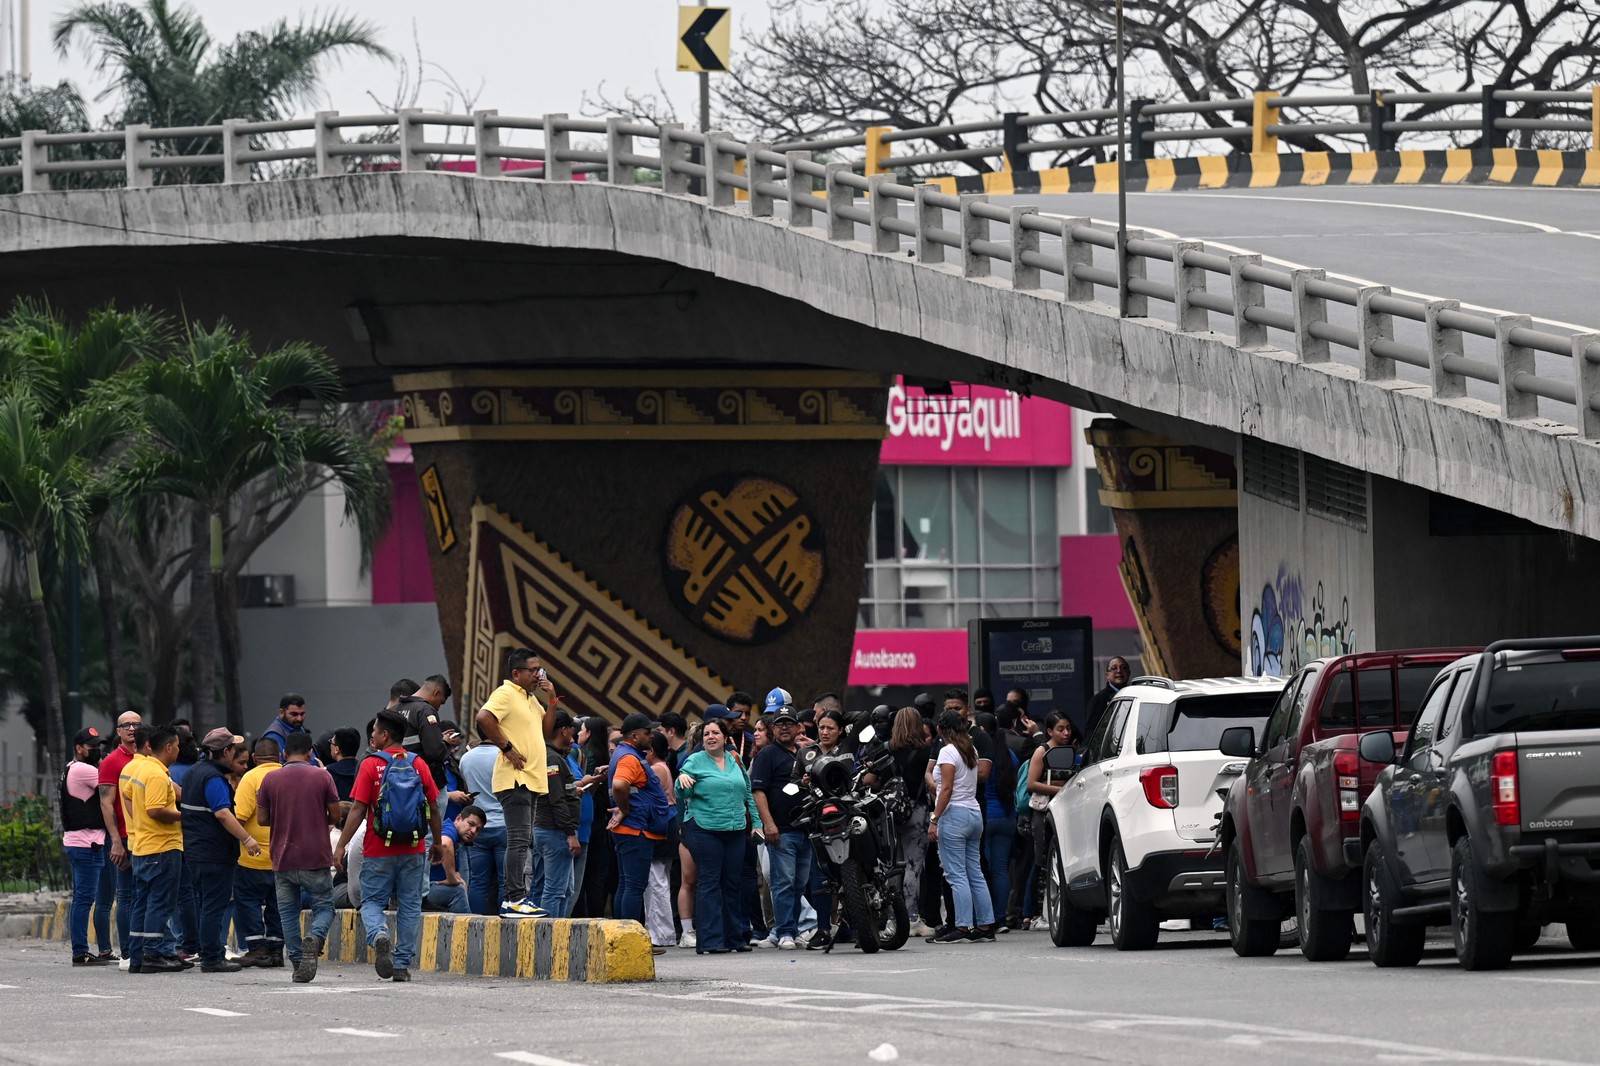 Pessoas se reúnem nas proximidades do canal de televisão equatoriano TC depois que grupo armado invadiu o estúdio de televisão estatal em Guayaquil — Foto: MARCOS PIN / AFP